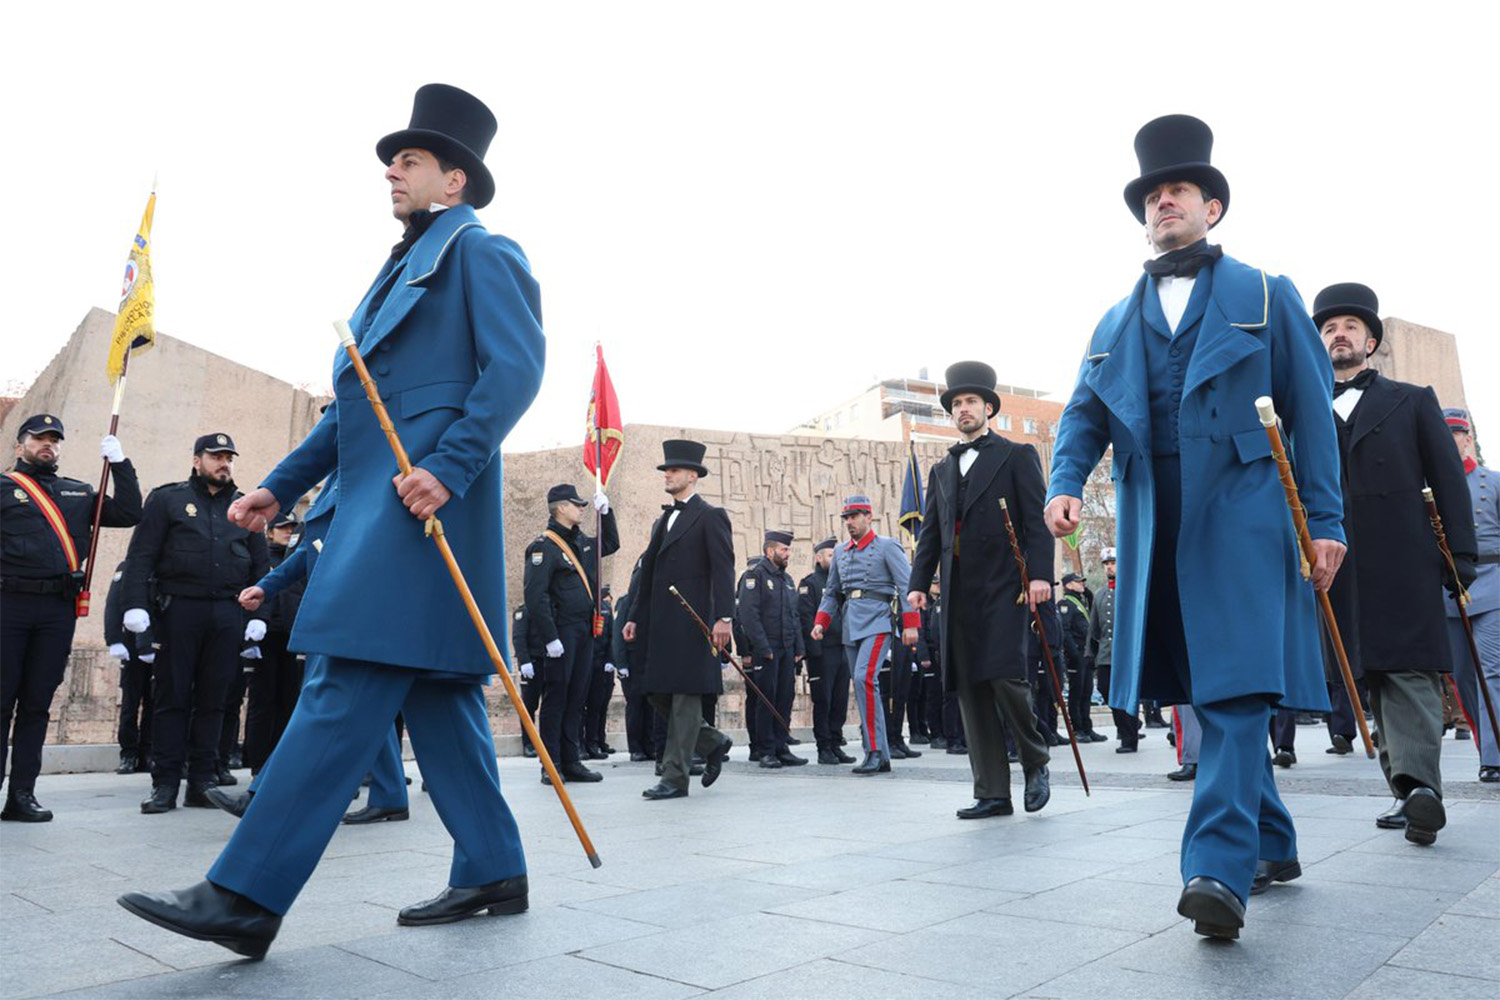 Desfile de uniformes antiguos durante la celebración del bicentenario de la Policía Nacional en la Plaza de Colón de Madrid.